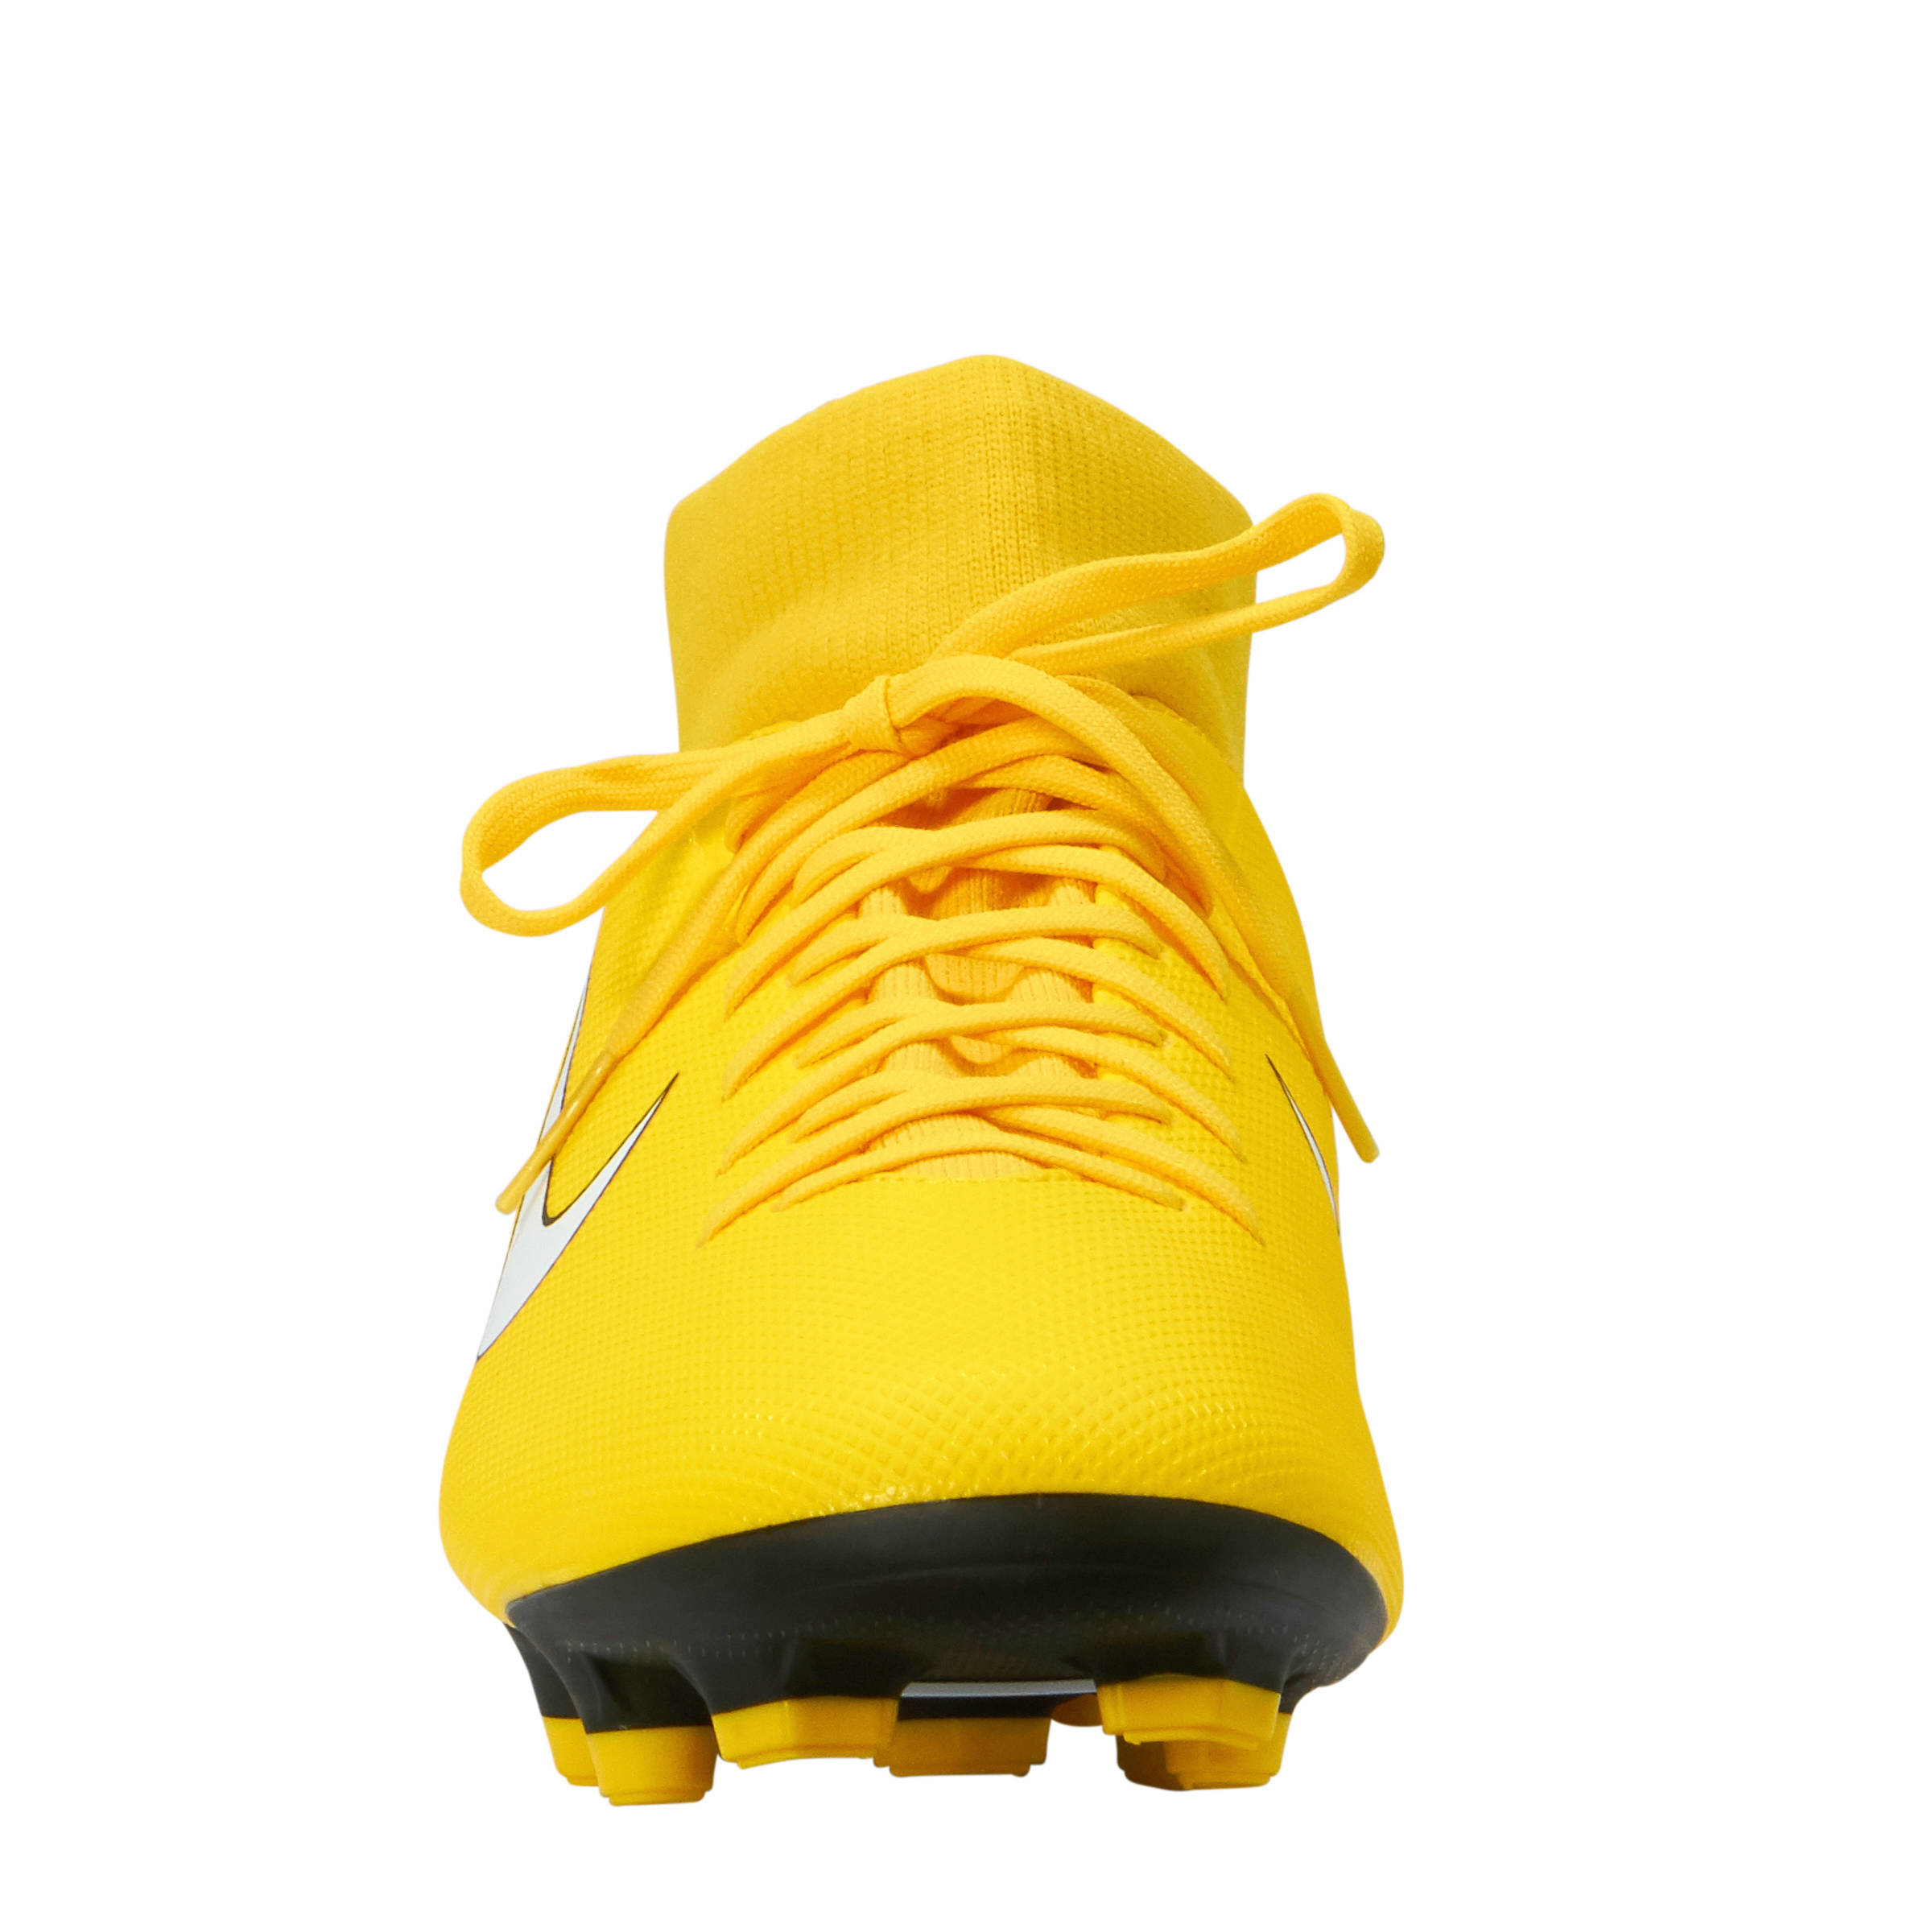 Nike Mercurial Superfly VI 360 FG Violeta Football Boots.